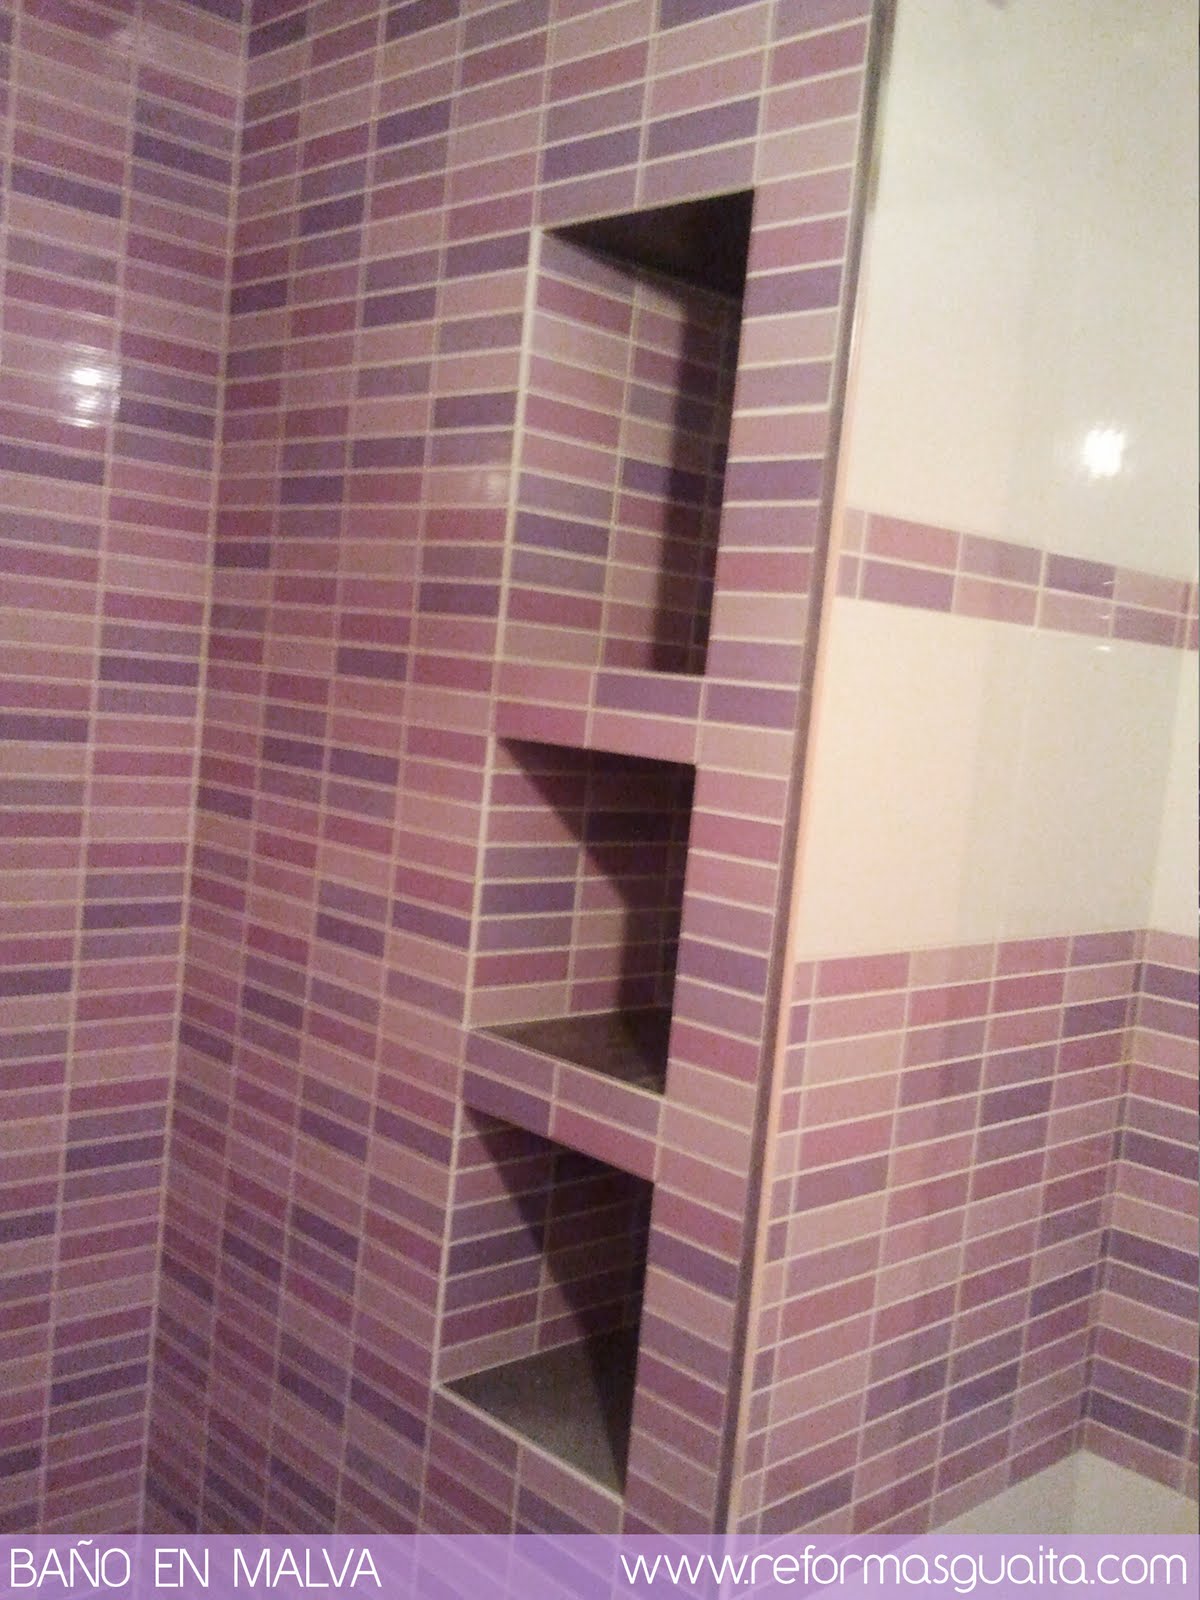 Un baño morado con toques malva, lila y rosa ~ Reformas Guaita